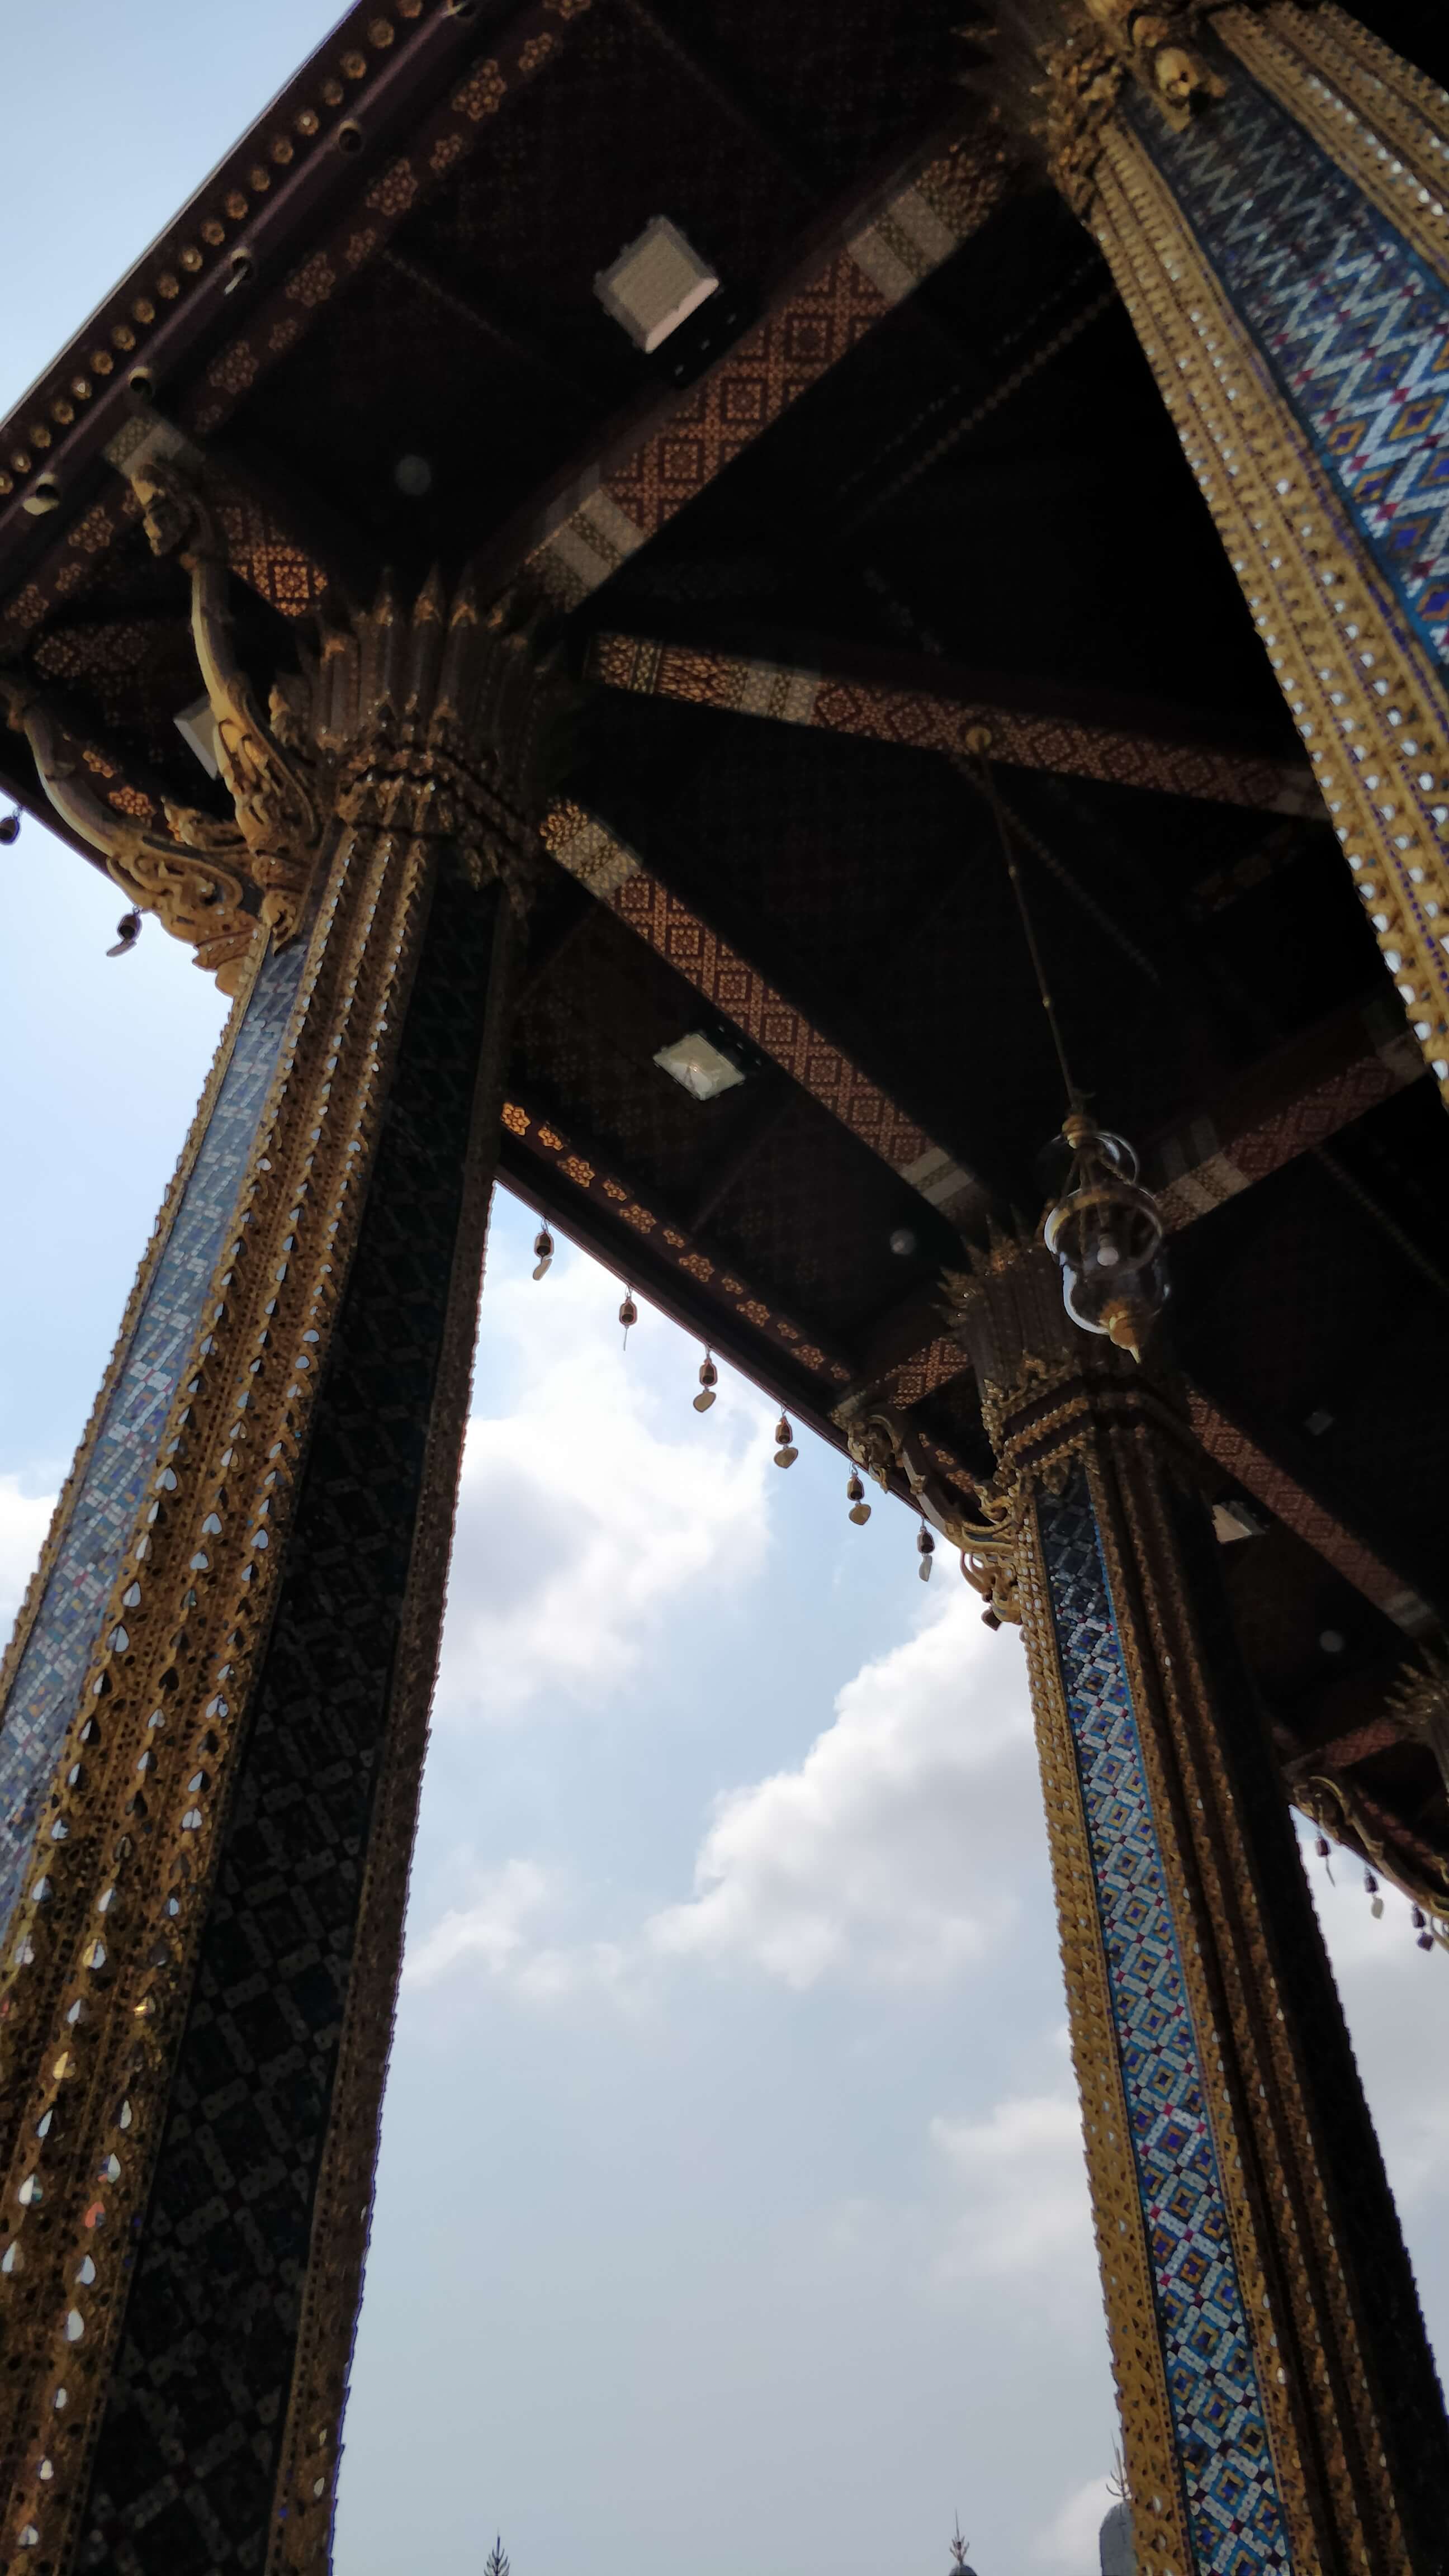 Thai temple columns